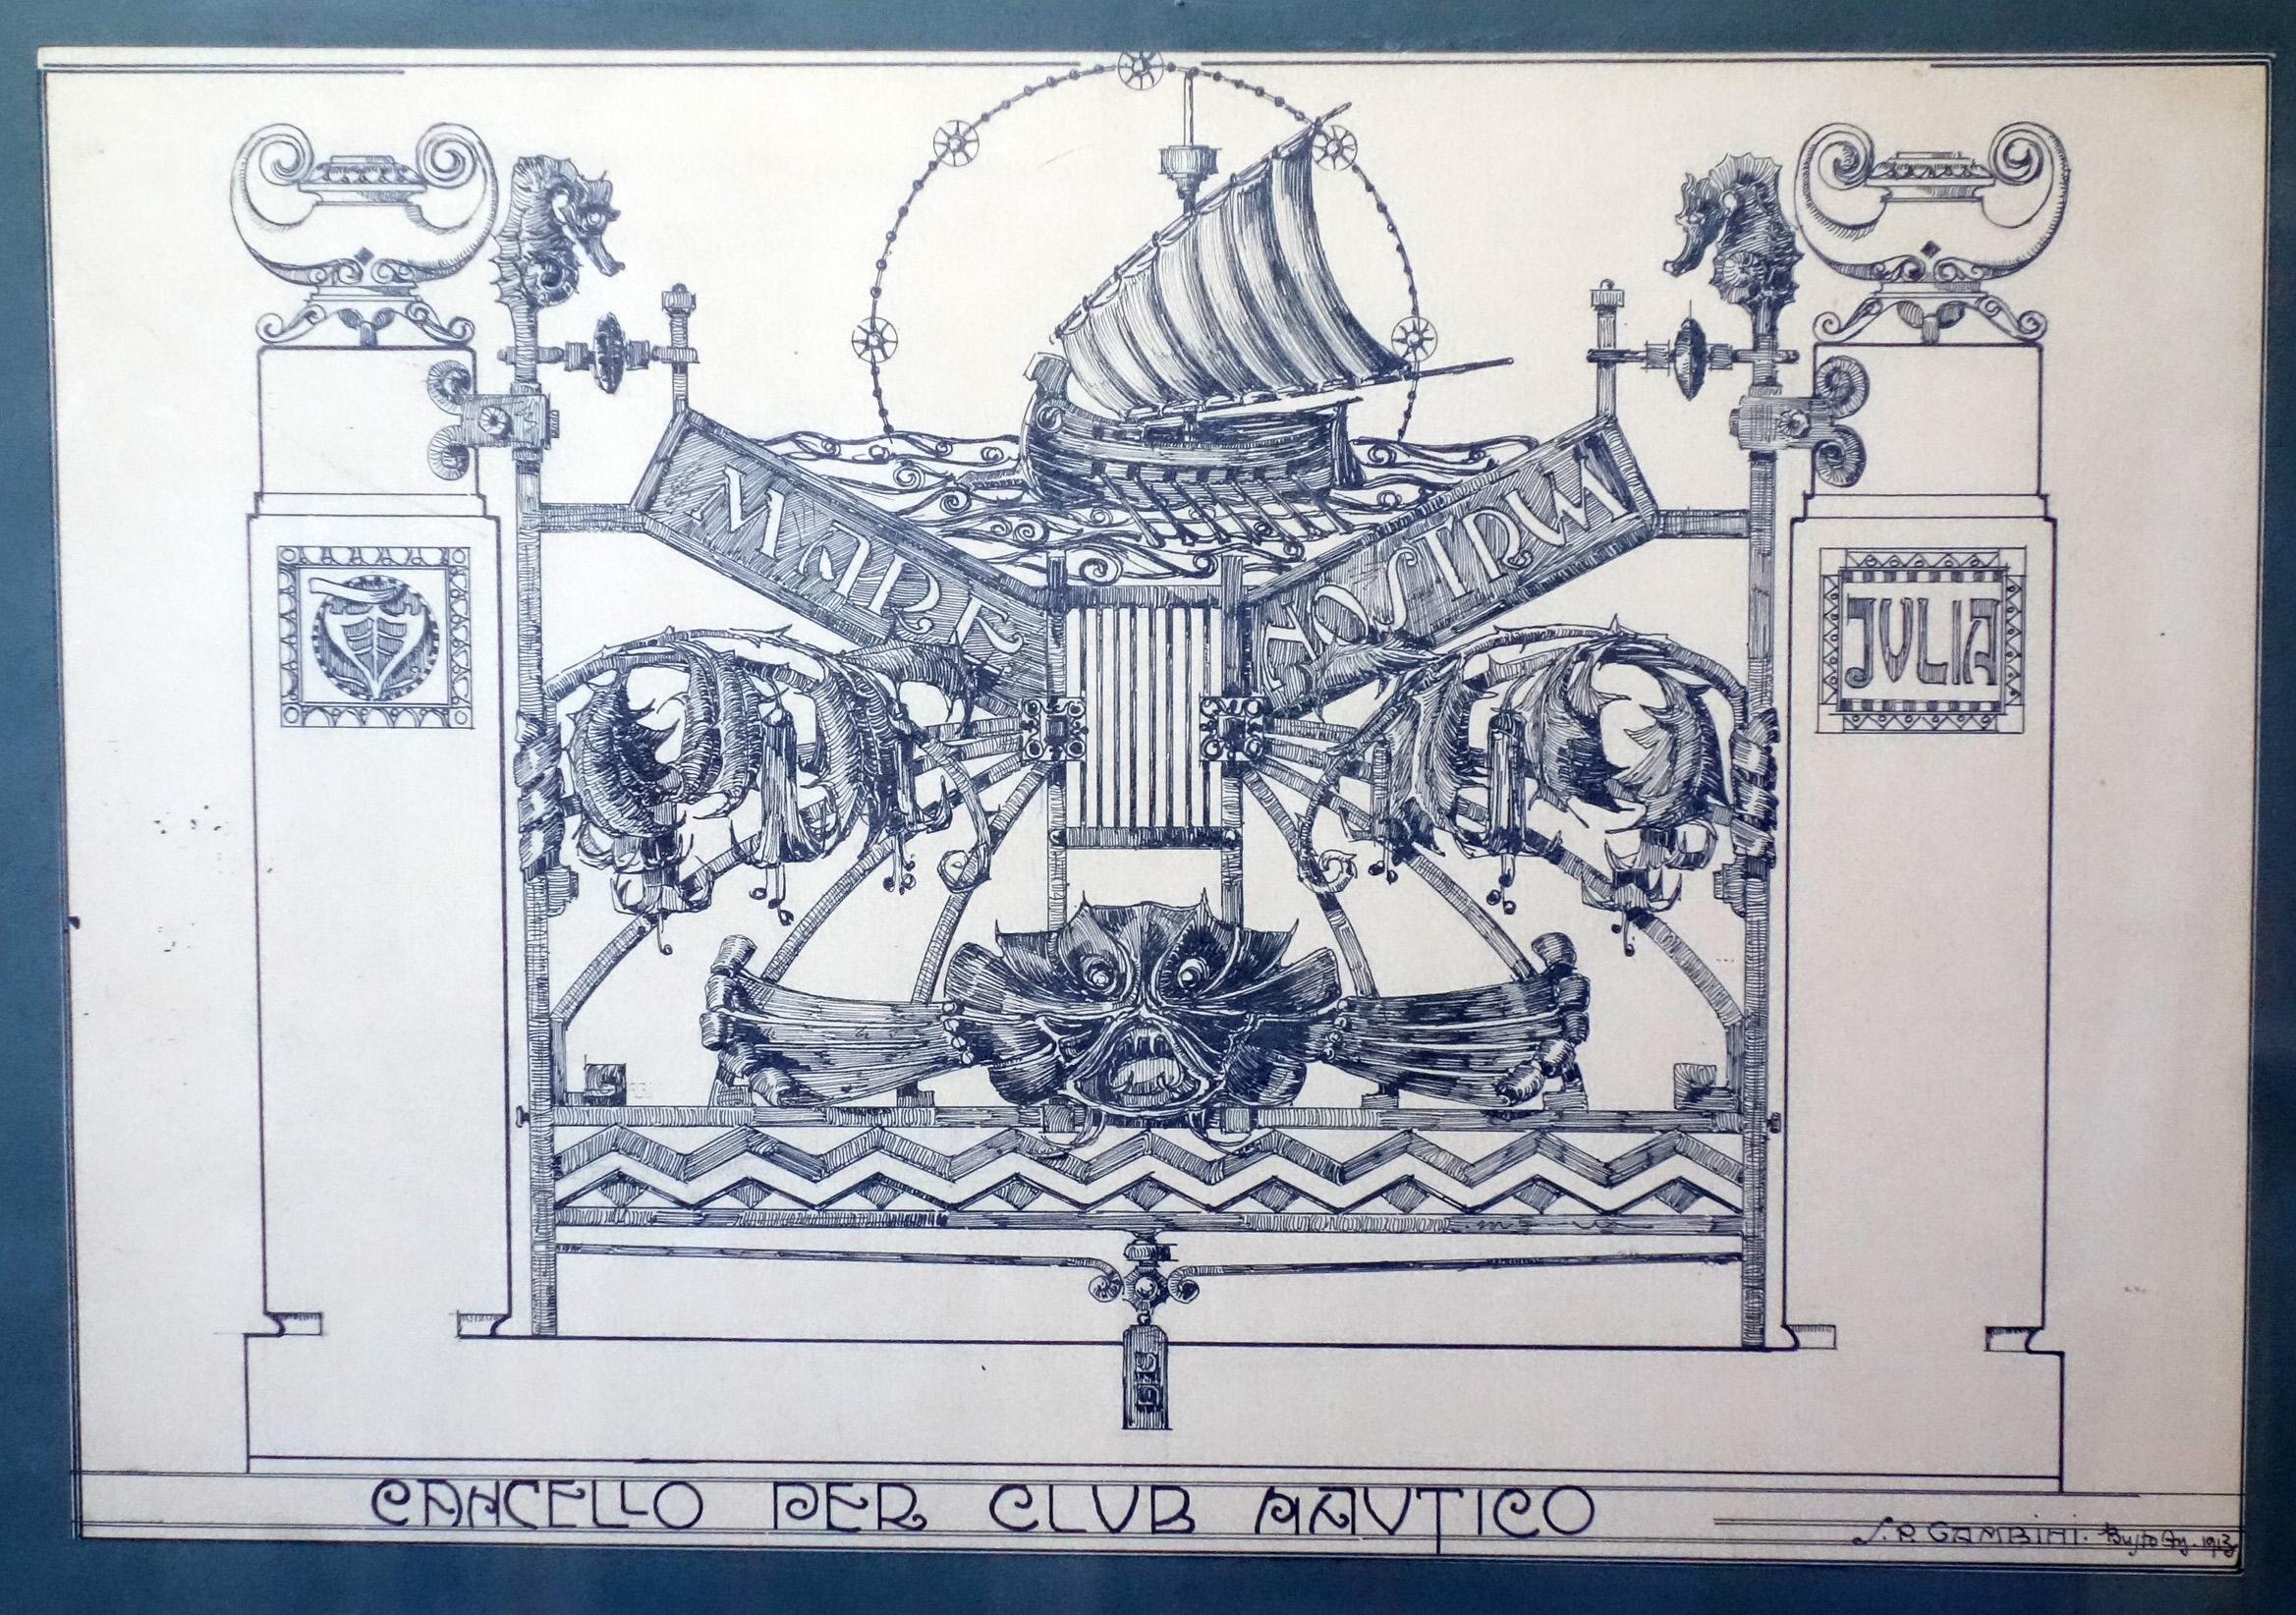 Silvio Gambini
Italy, 1913

Studio di Cancellata in Ferro Battuto
Disegno su Carta
Cornice Liberty in legno Originale

Firma dell'artista in basso a destra

Misure carta:  27.5x39
Misure cornice: 77.5x61x2.5 cm

Silvio Pellico Gambini (Teramo, 18